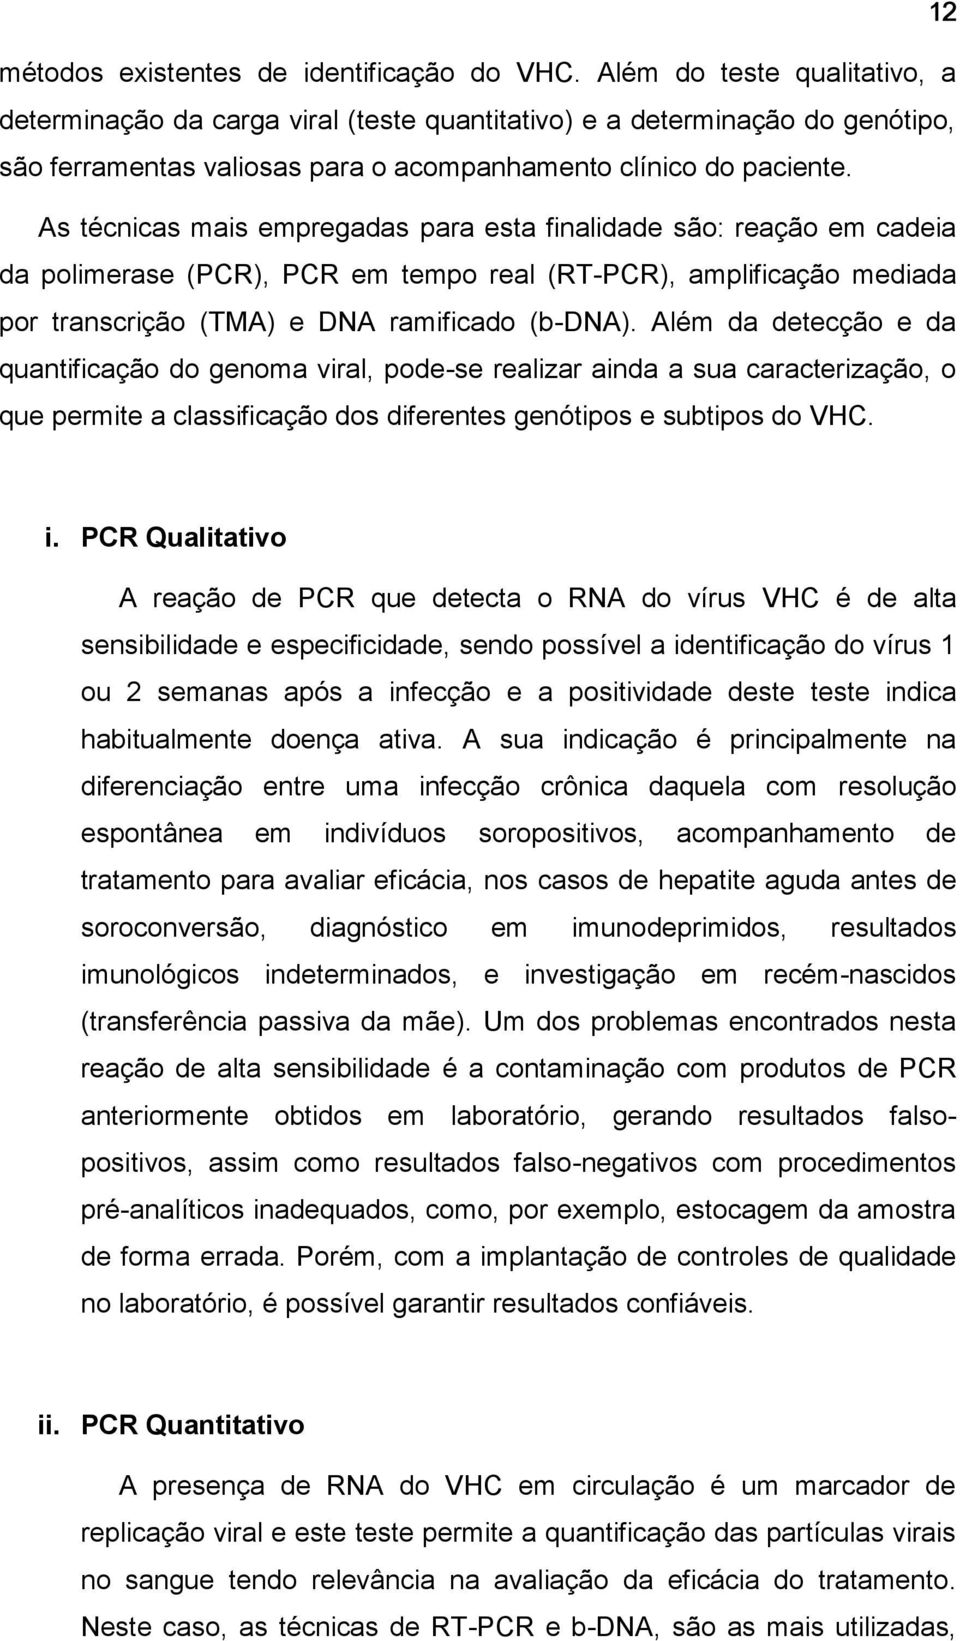 As técnicas mais empregadas para esta finalidade são: reação em cadeia da polimerase (PCR), PCR em tempo real (RT-PCR), amplificação mediada por transcrição (TMA) e DNA ramificado (b-dna).